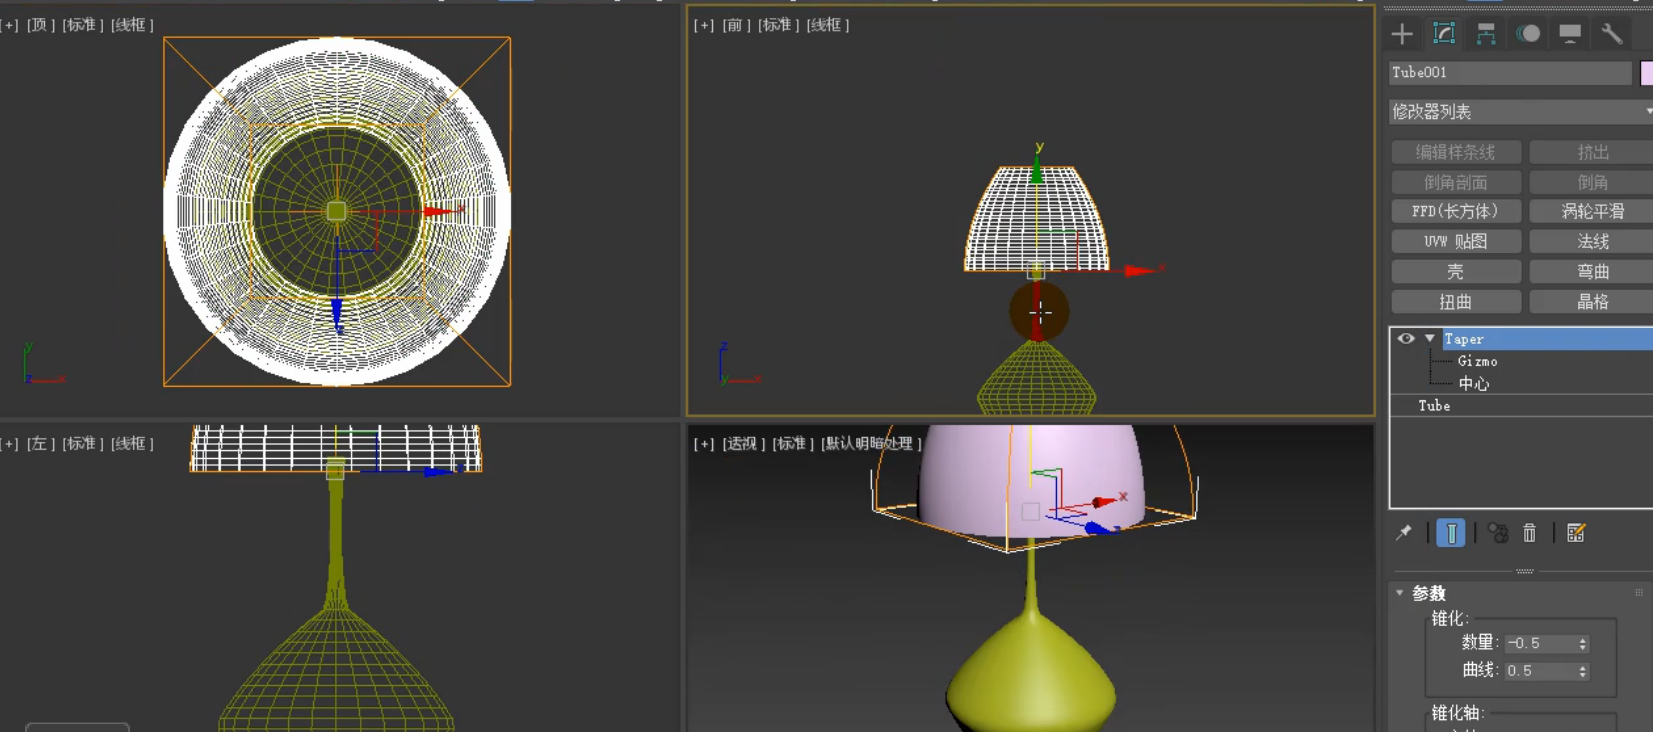 3dmax教程,如何利用3dmax的多次锥化制作简约台灯